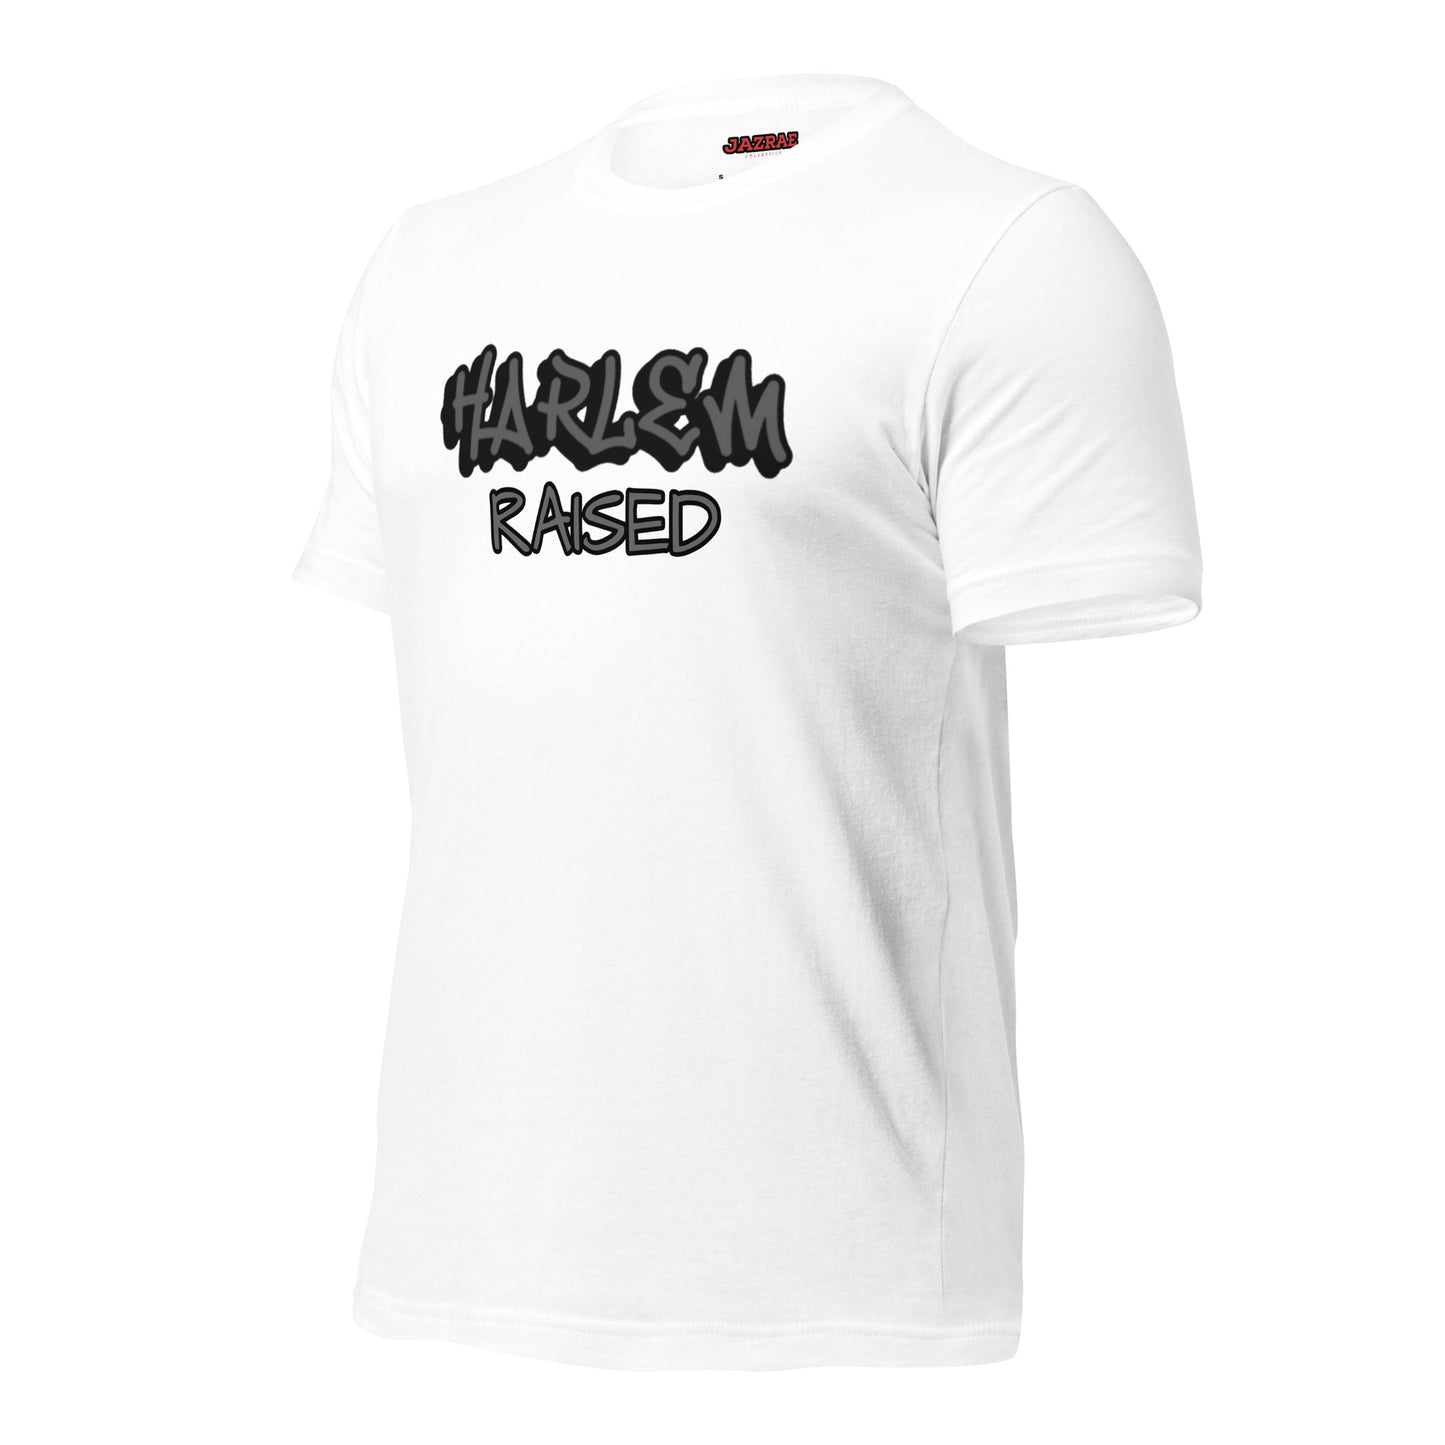 JAZRAE HARLEM raised Unisex t-shirt